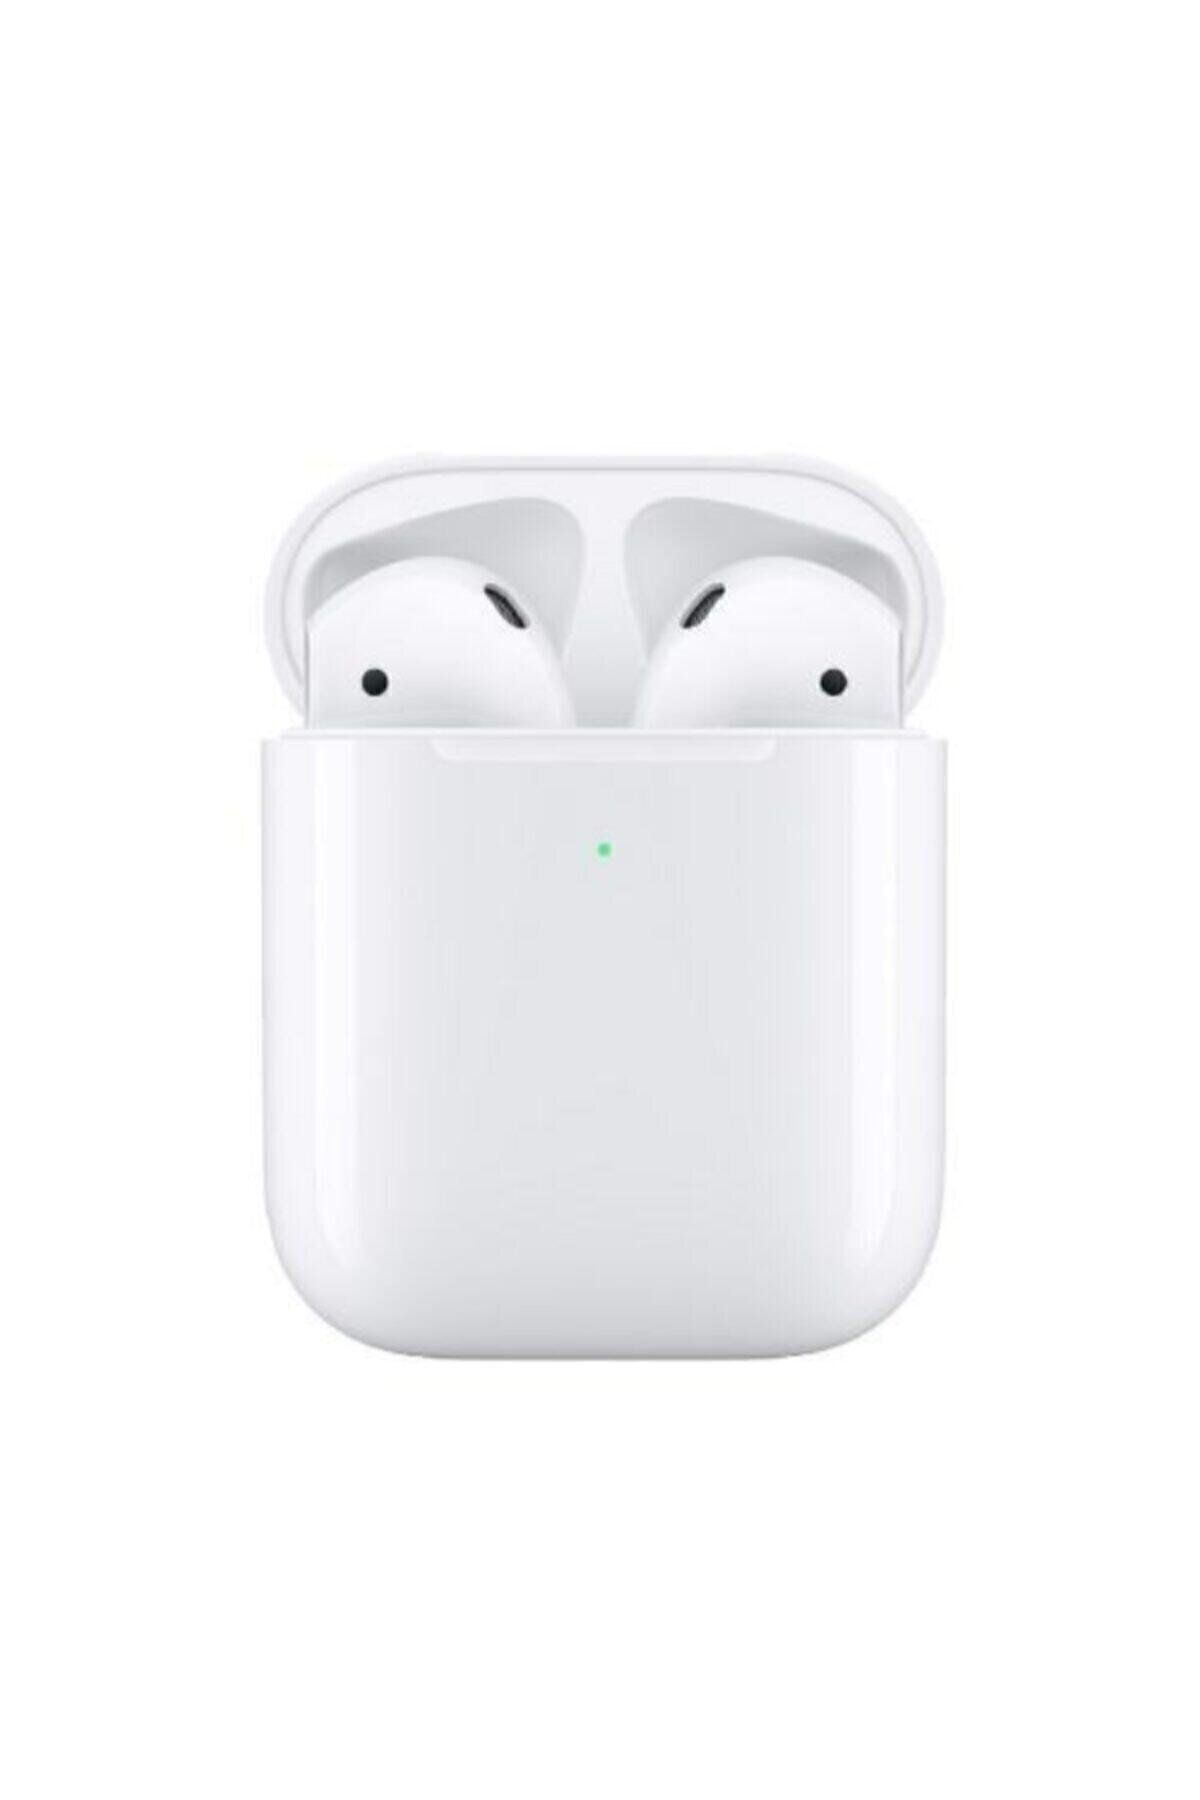 Ocado Beyaz 2. Nesil Tüm Telefonlar Ile Uyumlu Bluetooth 5.0 Kulakiçi Kulaklık